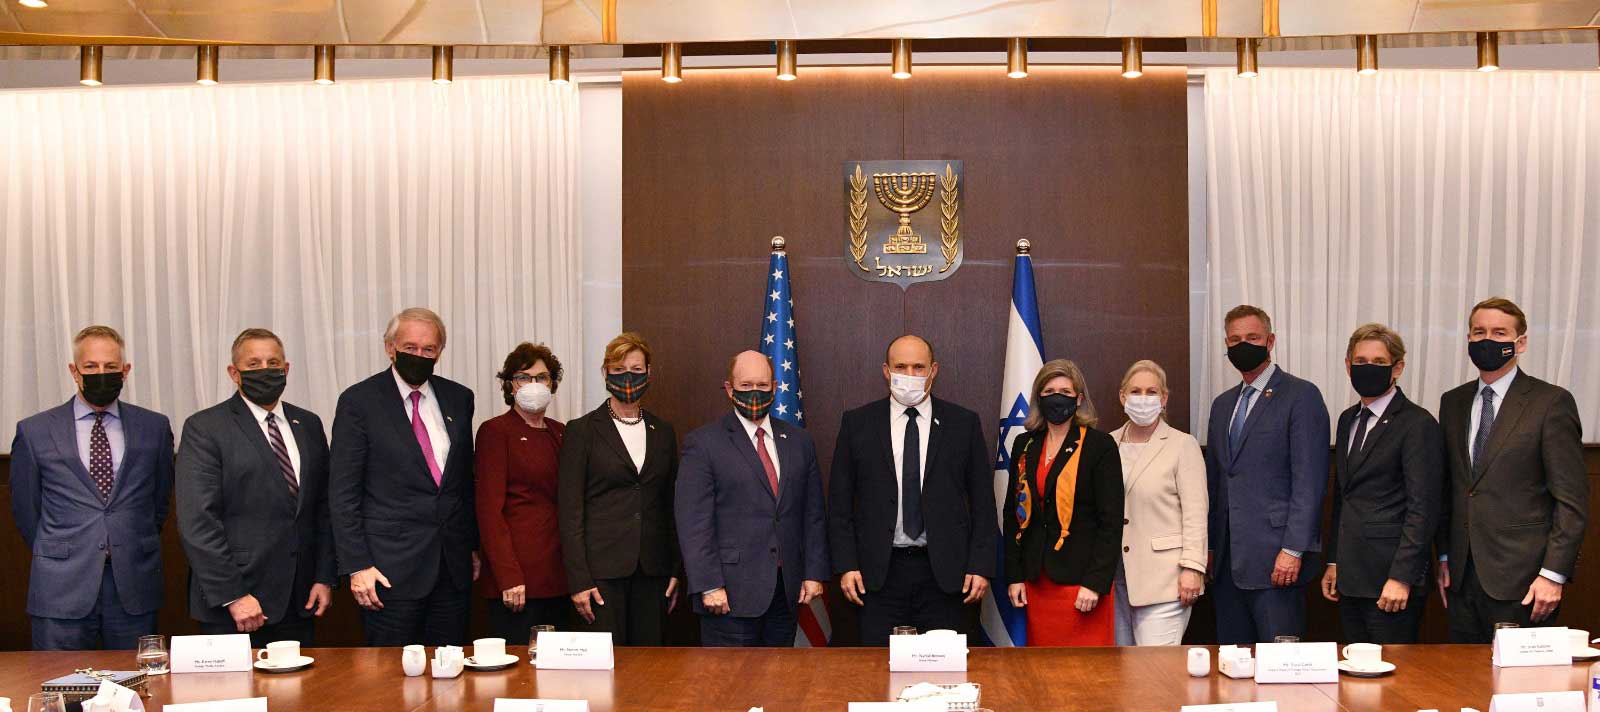 El primer ministro Bennett se reúne con legisladores estadounidenses en Jerusalén